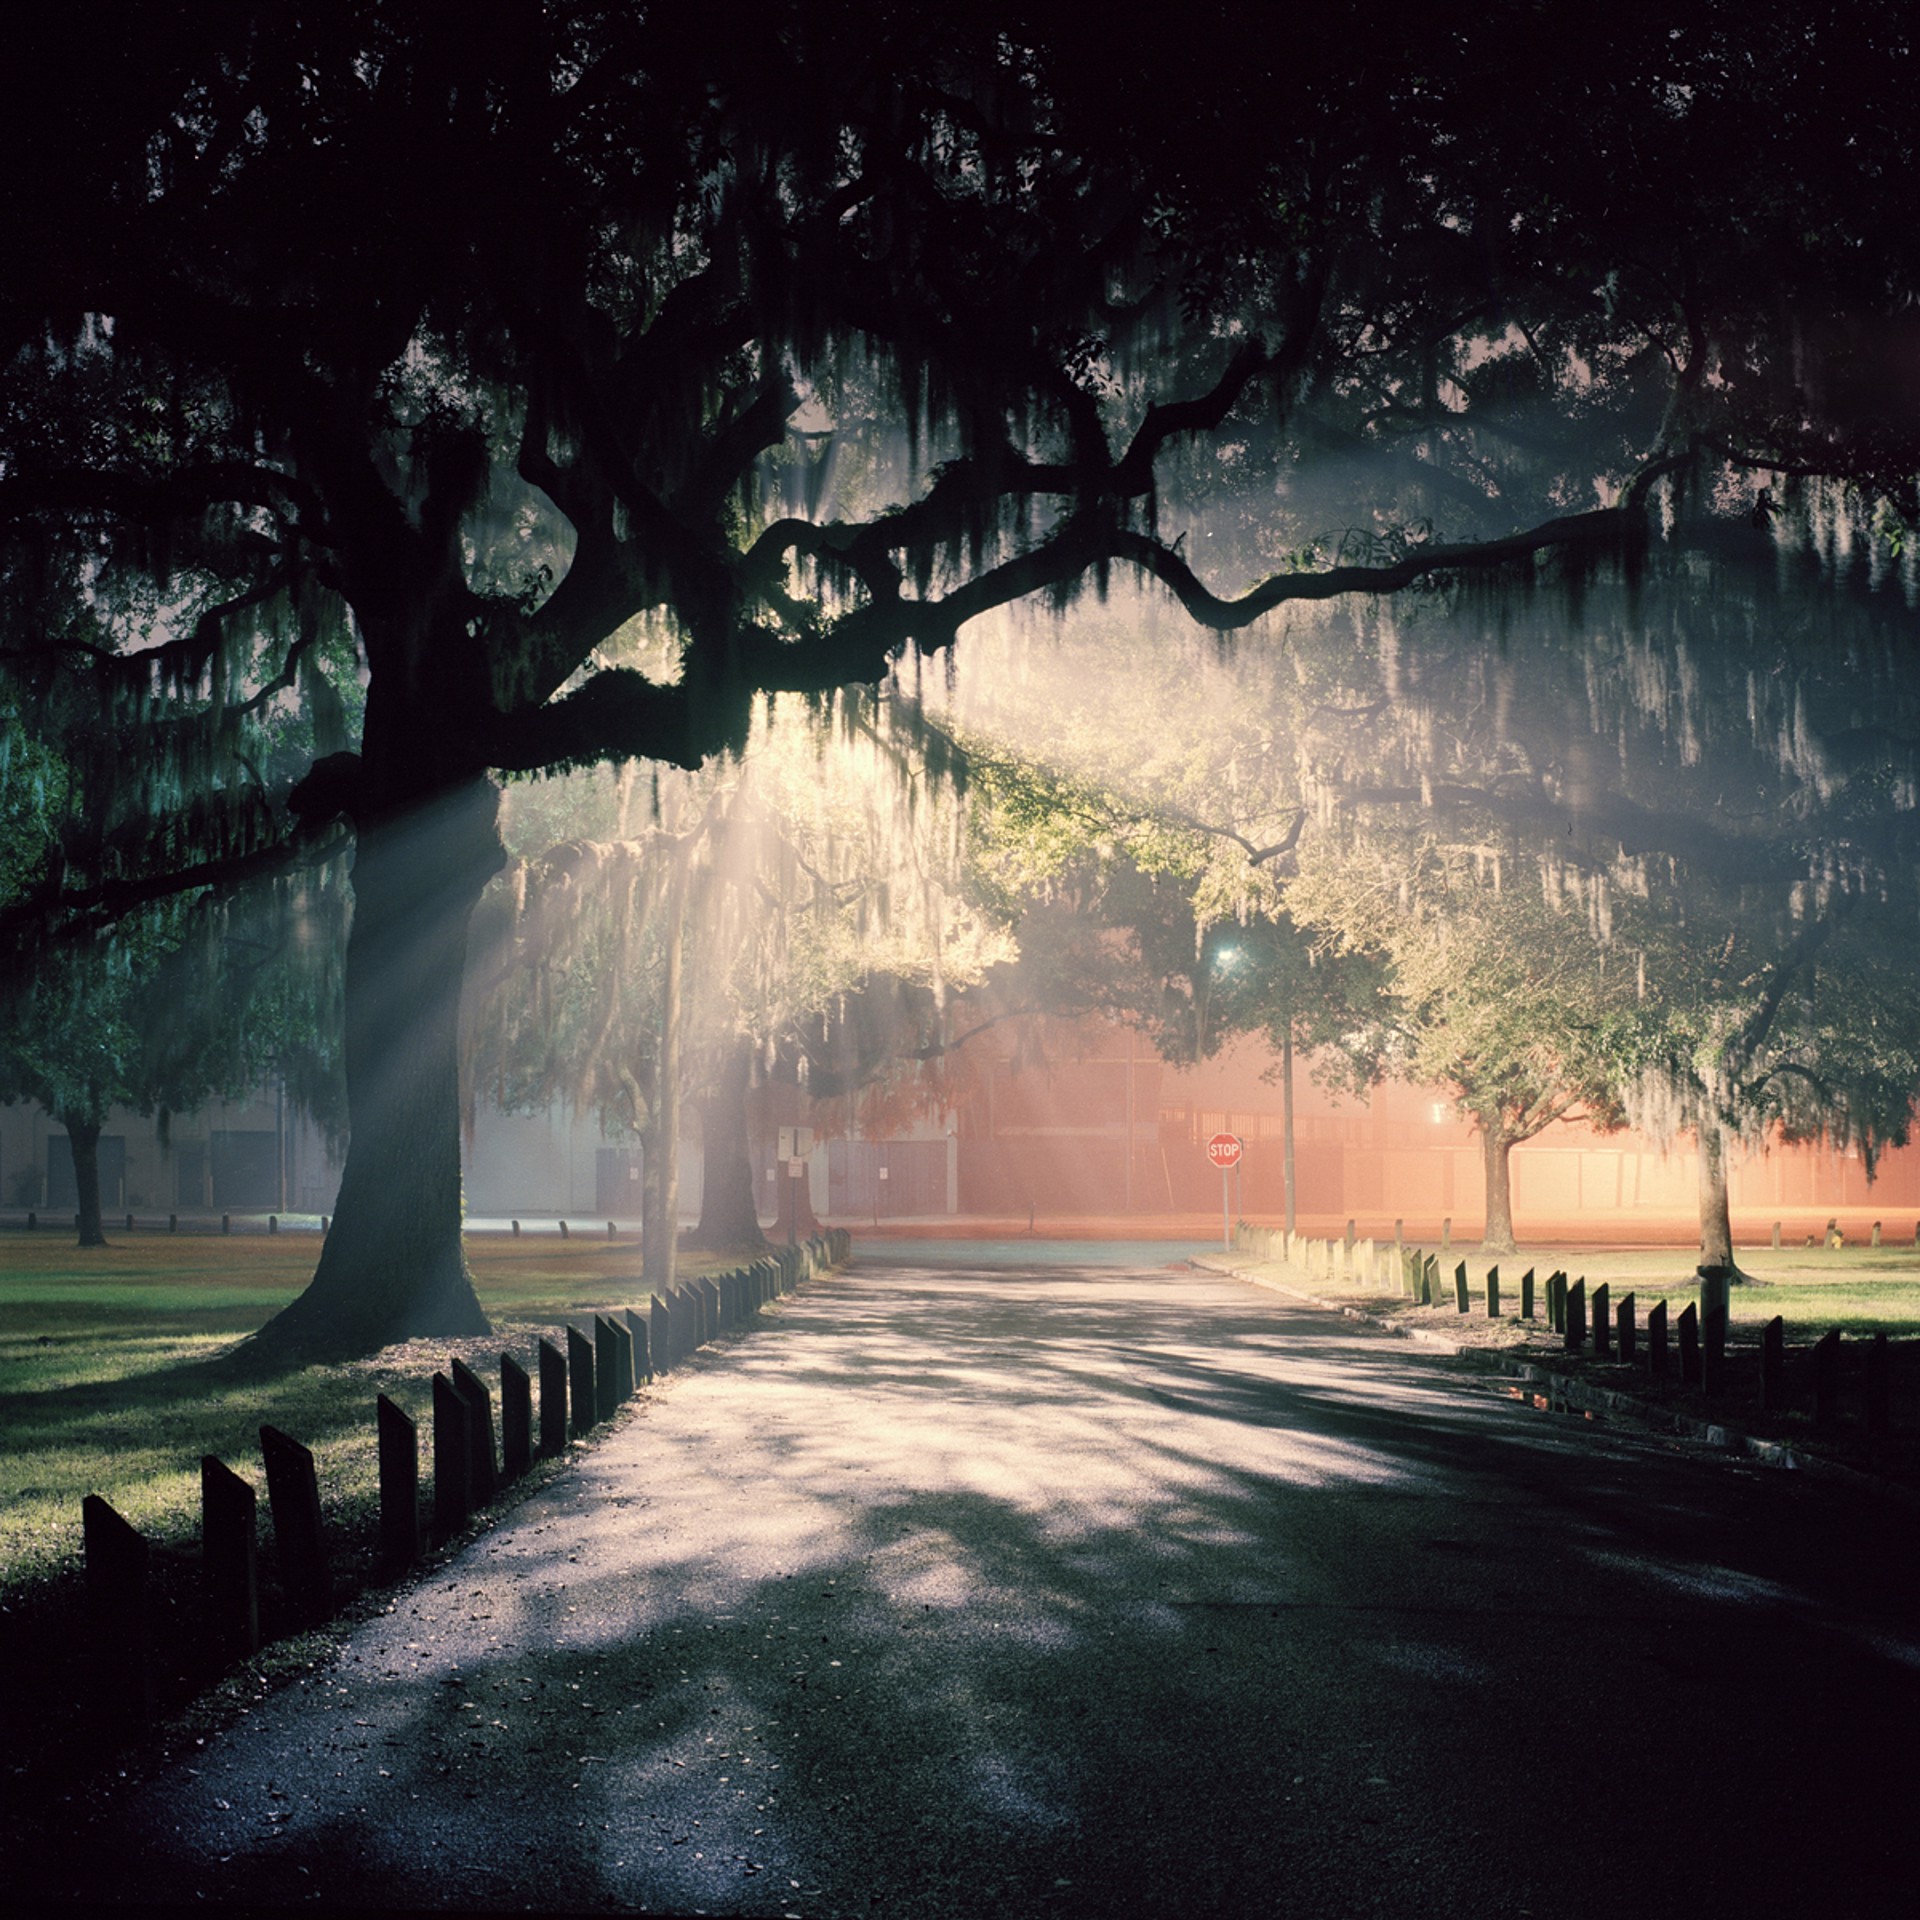 Savannah Nights #184 by Adam Kuehl